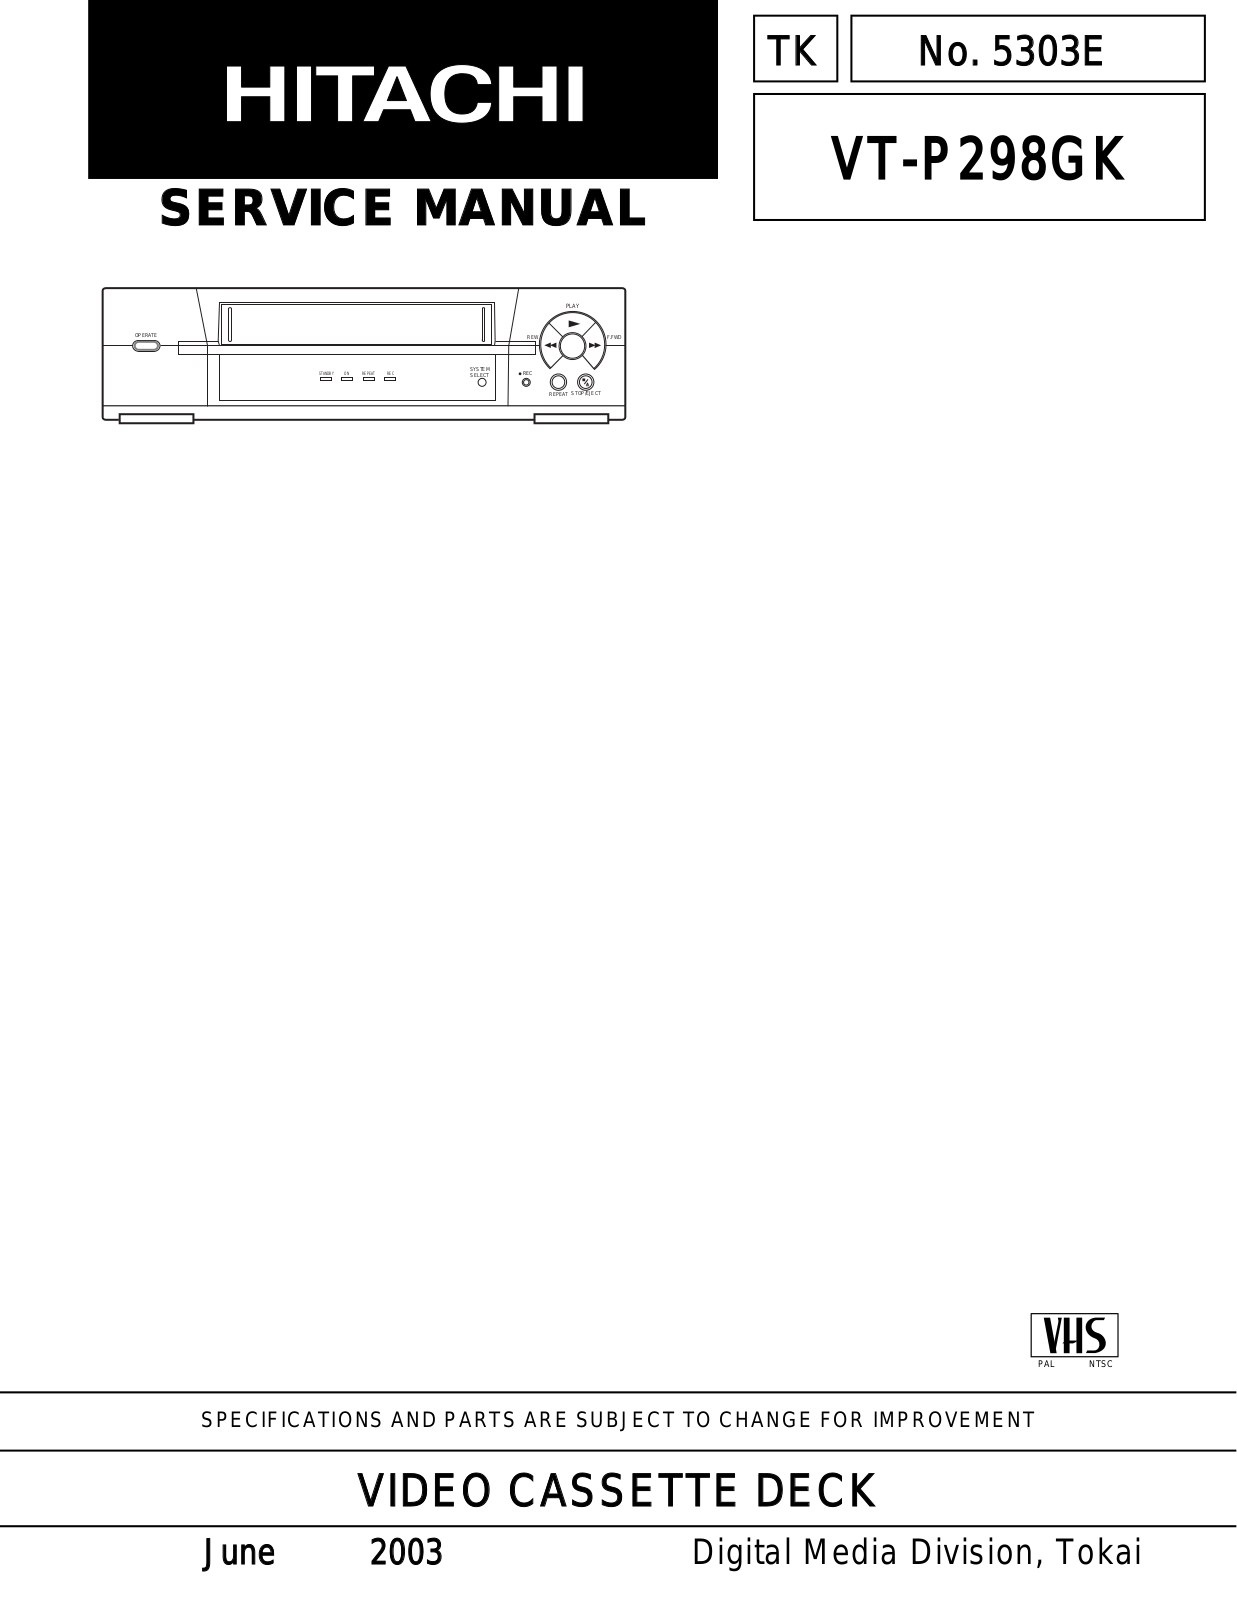 Hitachi vt-p298gk Service Manual